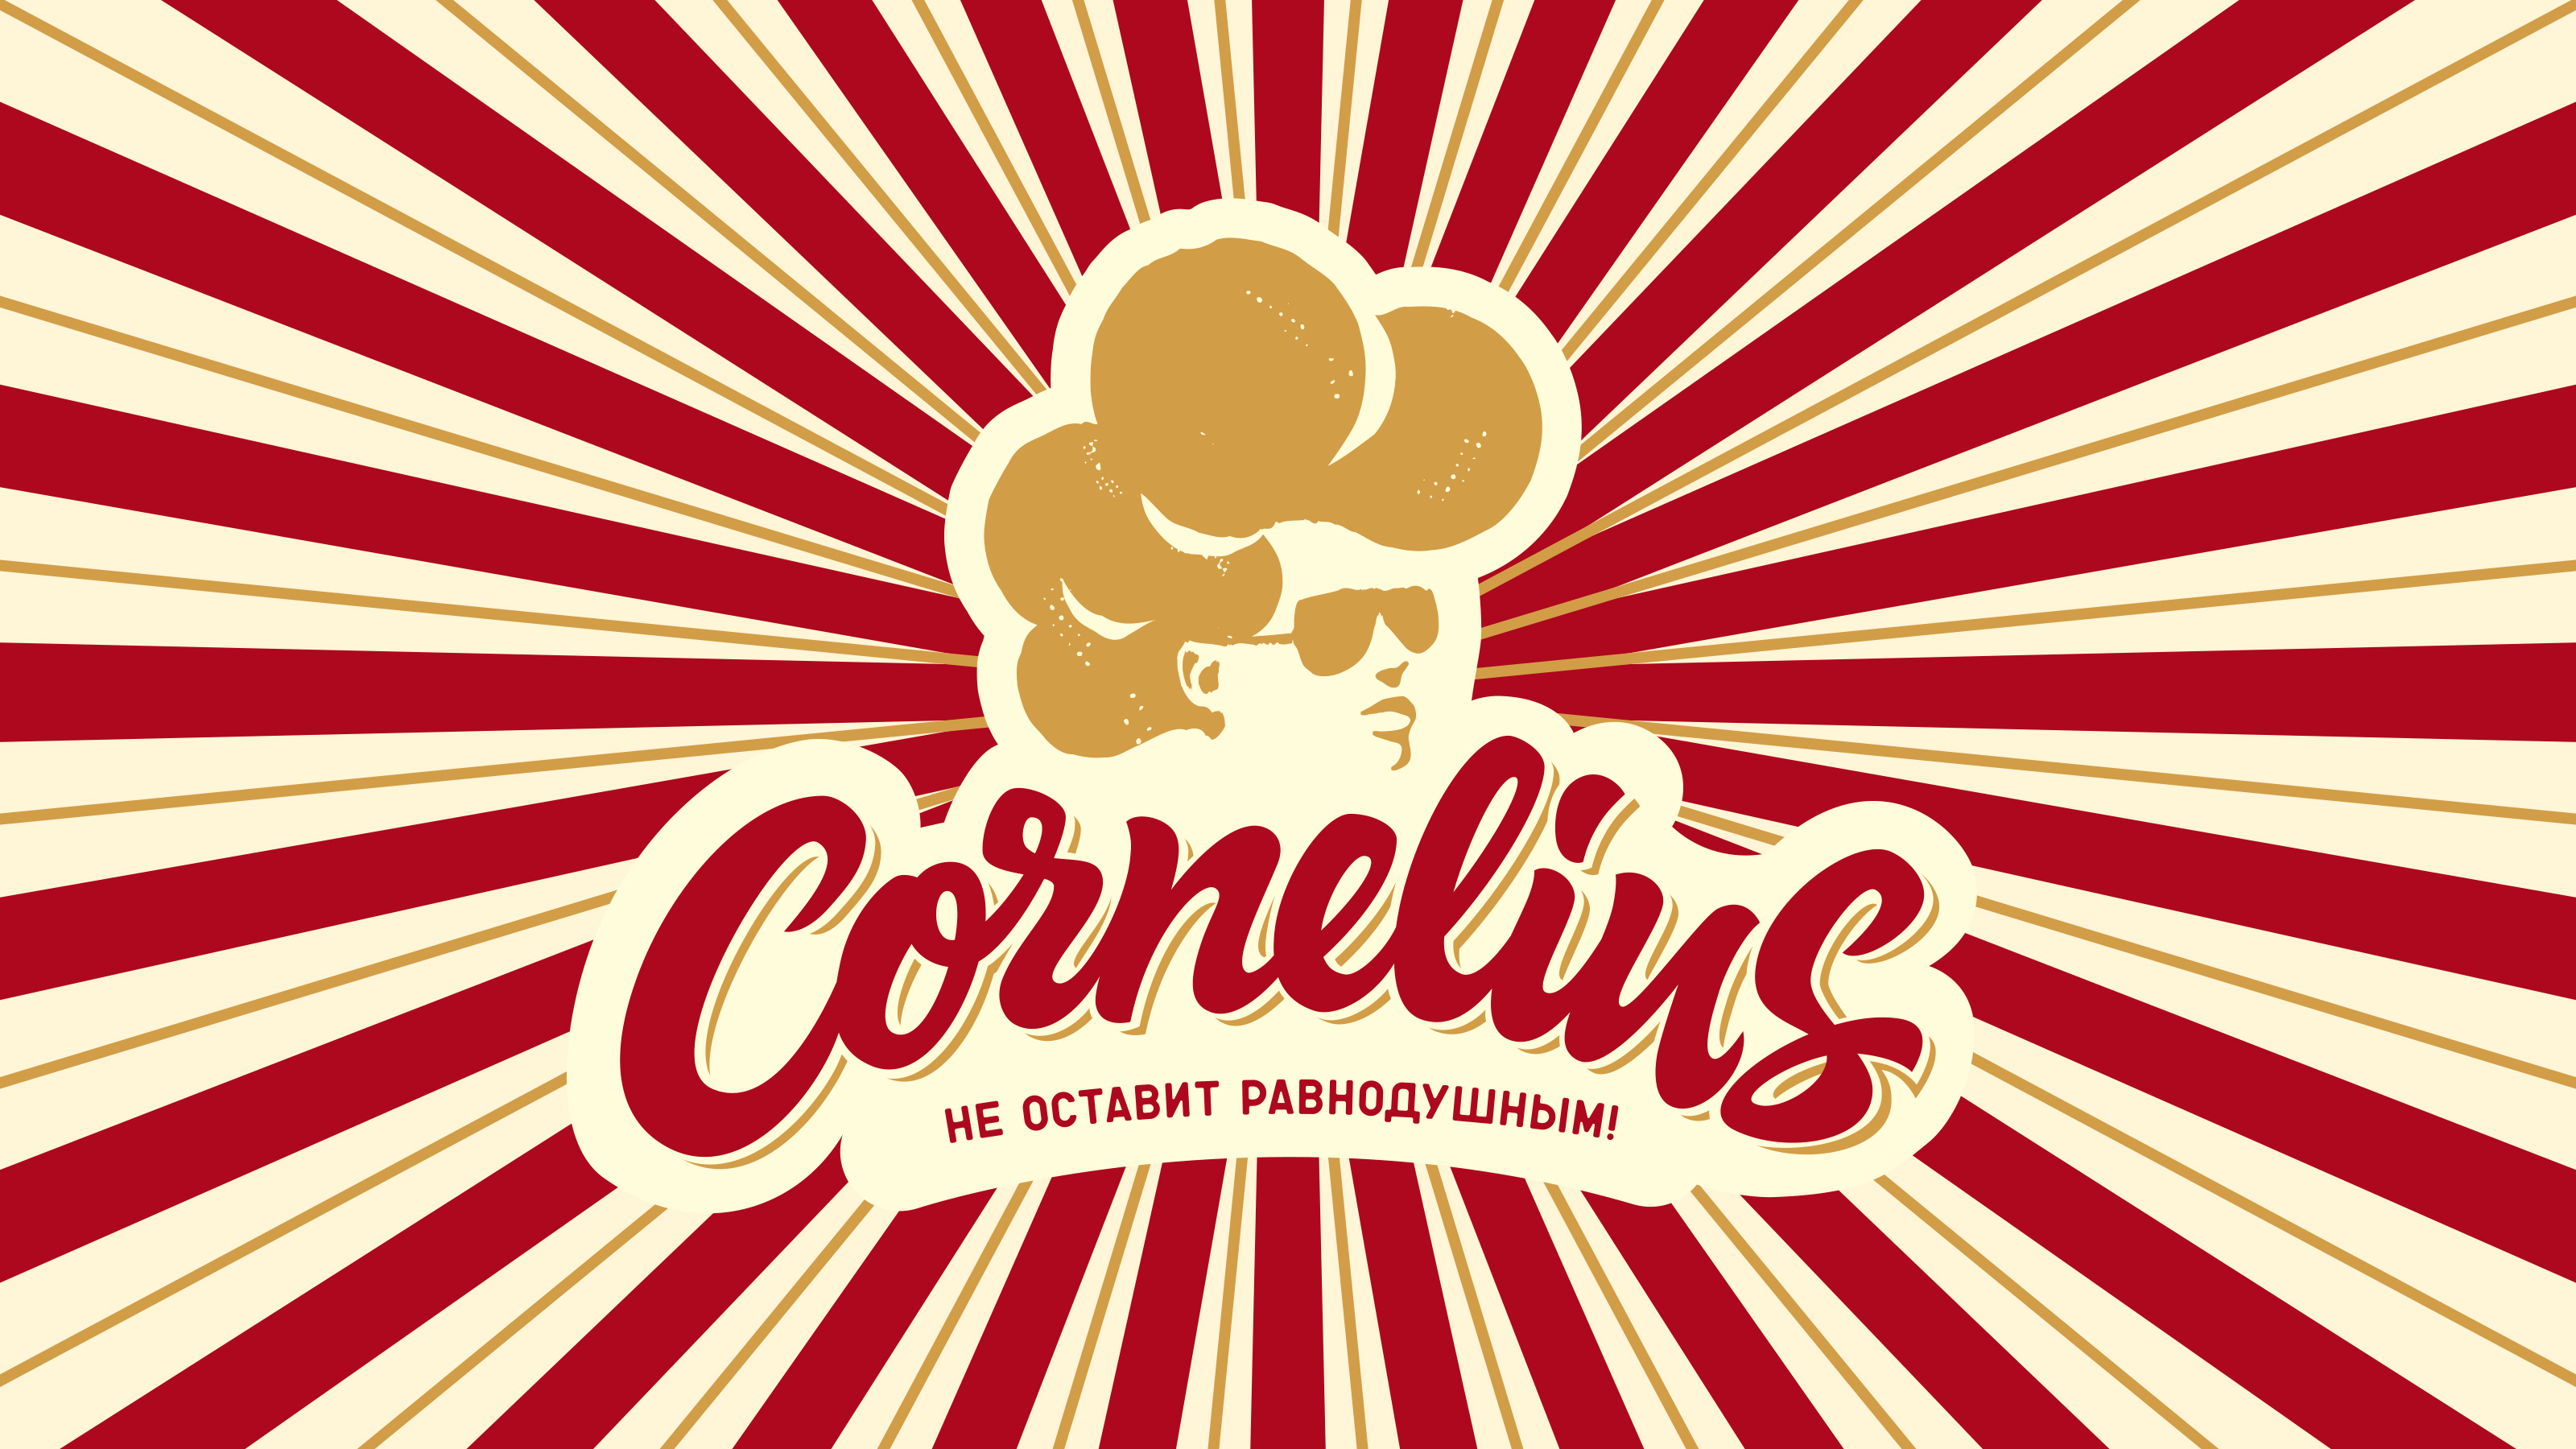 Cornelius - Kima